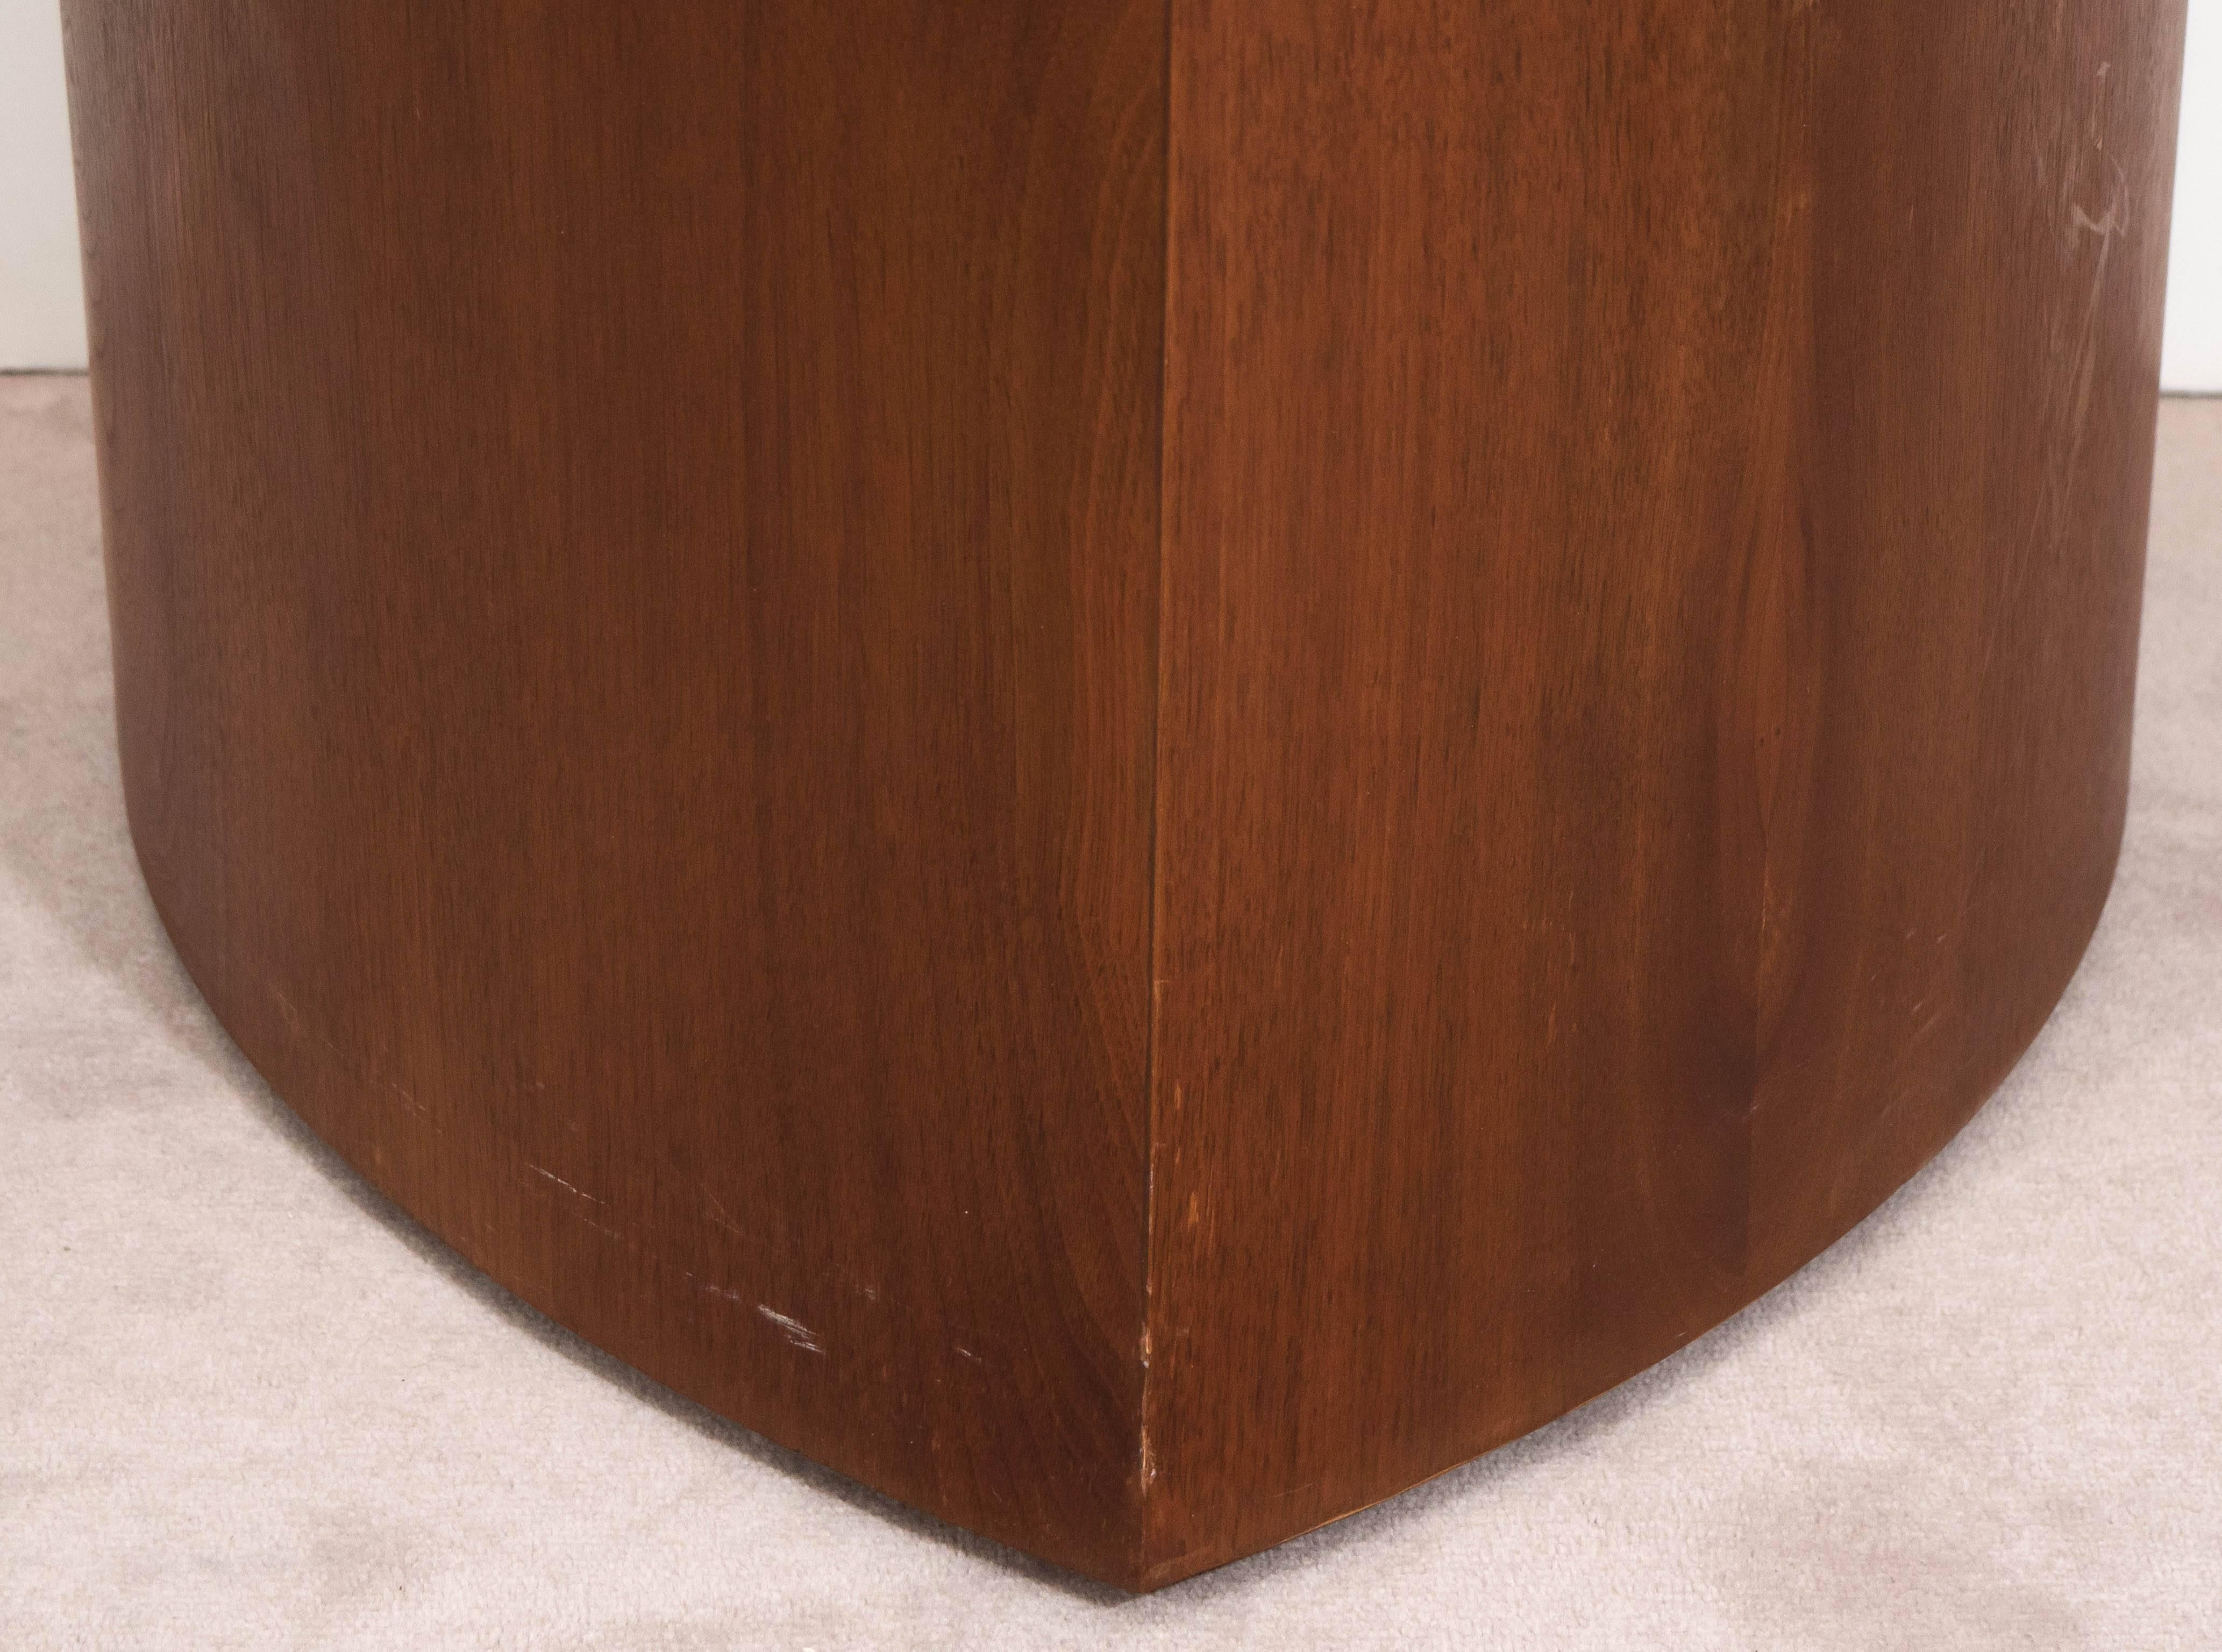 Cette table d'appoint, produite vers les années 1960, comprend un plateau triangulaire en travertin italien, sur une base cunéiforme en noyer, le plateau se détachant de la base. La table reste en très bon état, avec une présence mineure d'usure et